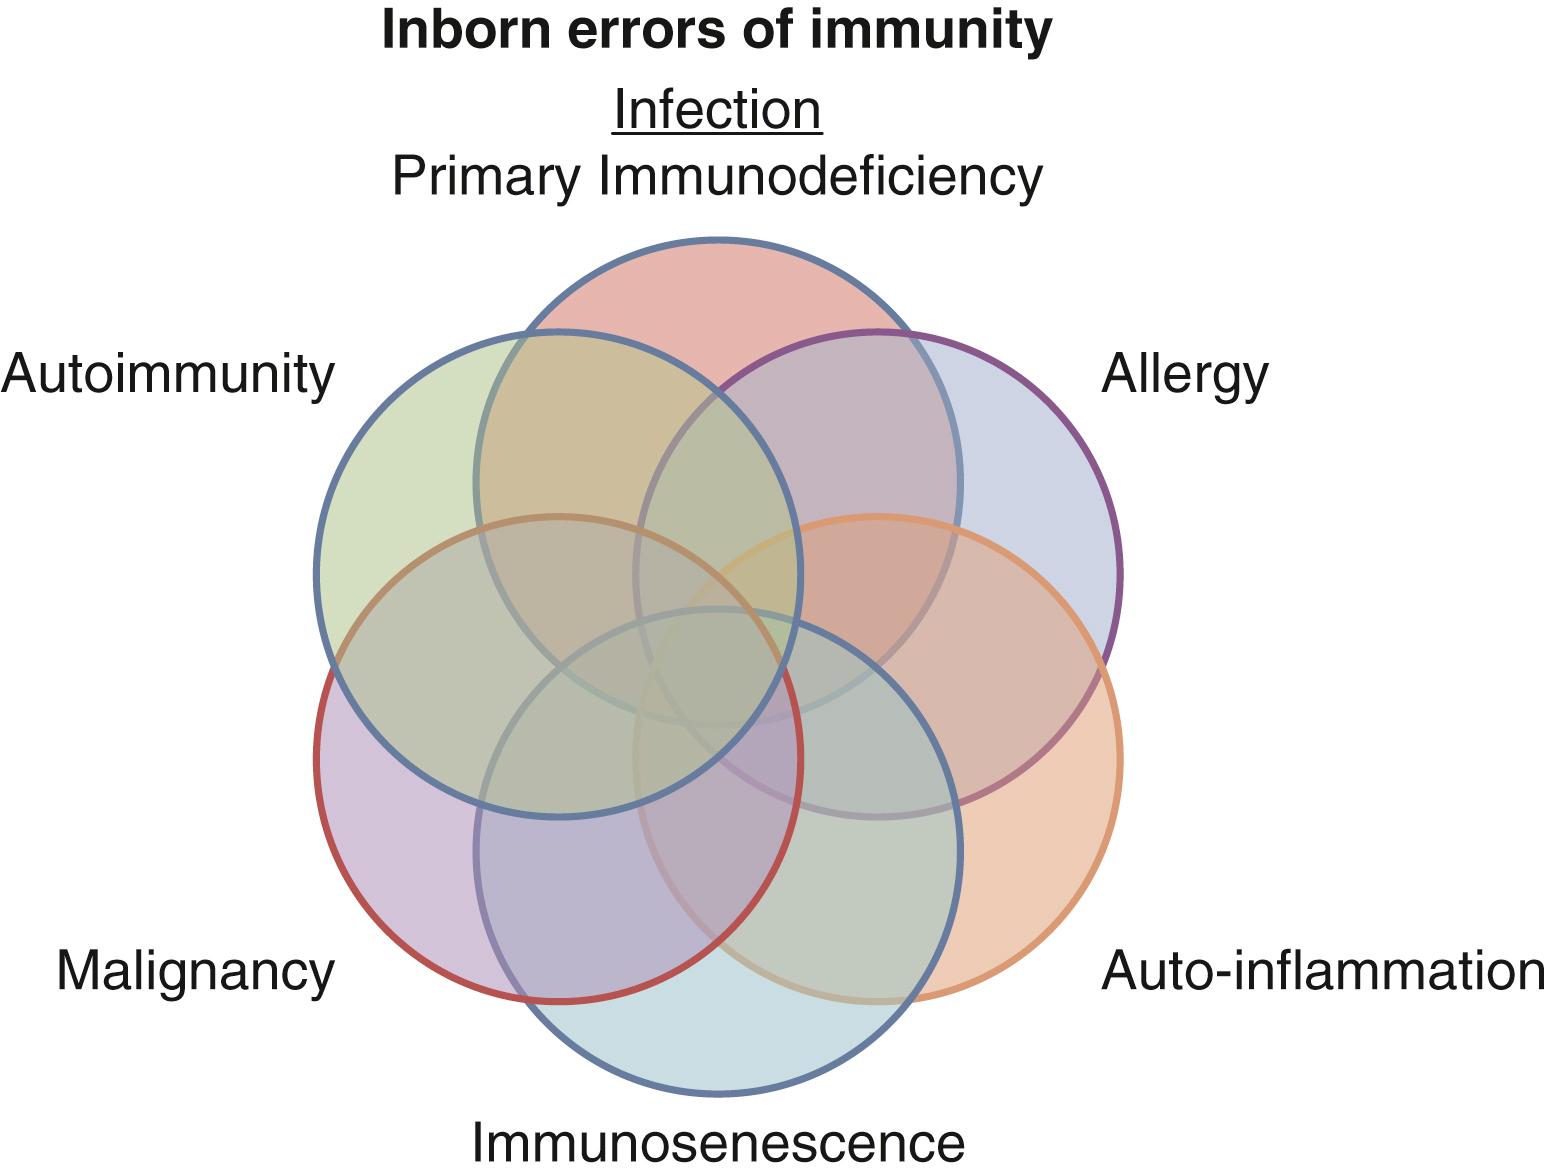 Fig. 43.1, Inborn errors of immunity (immune system “failures”).